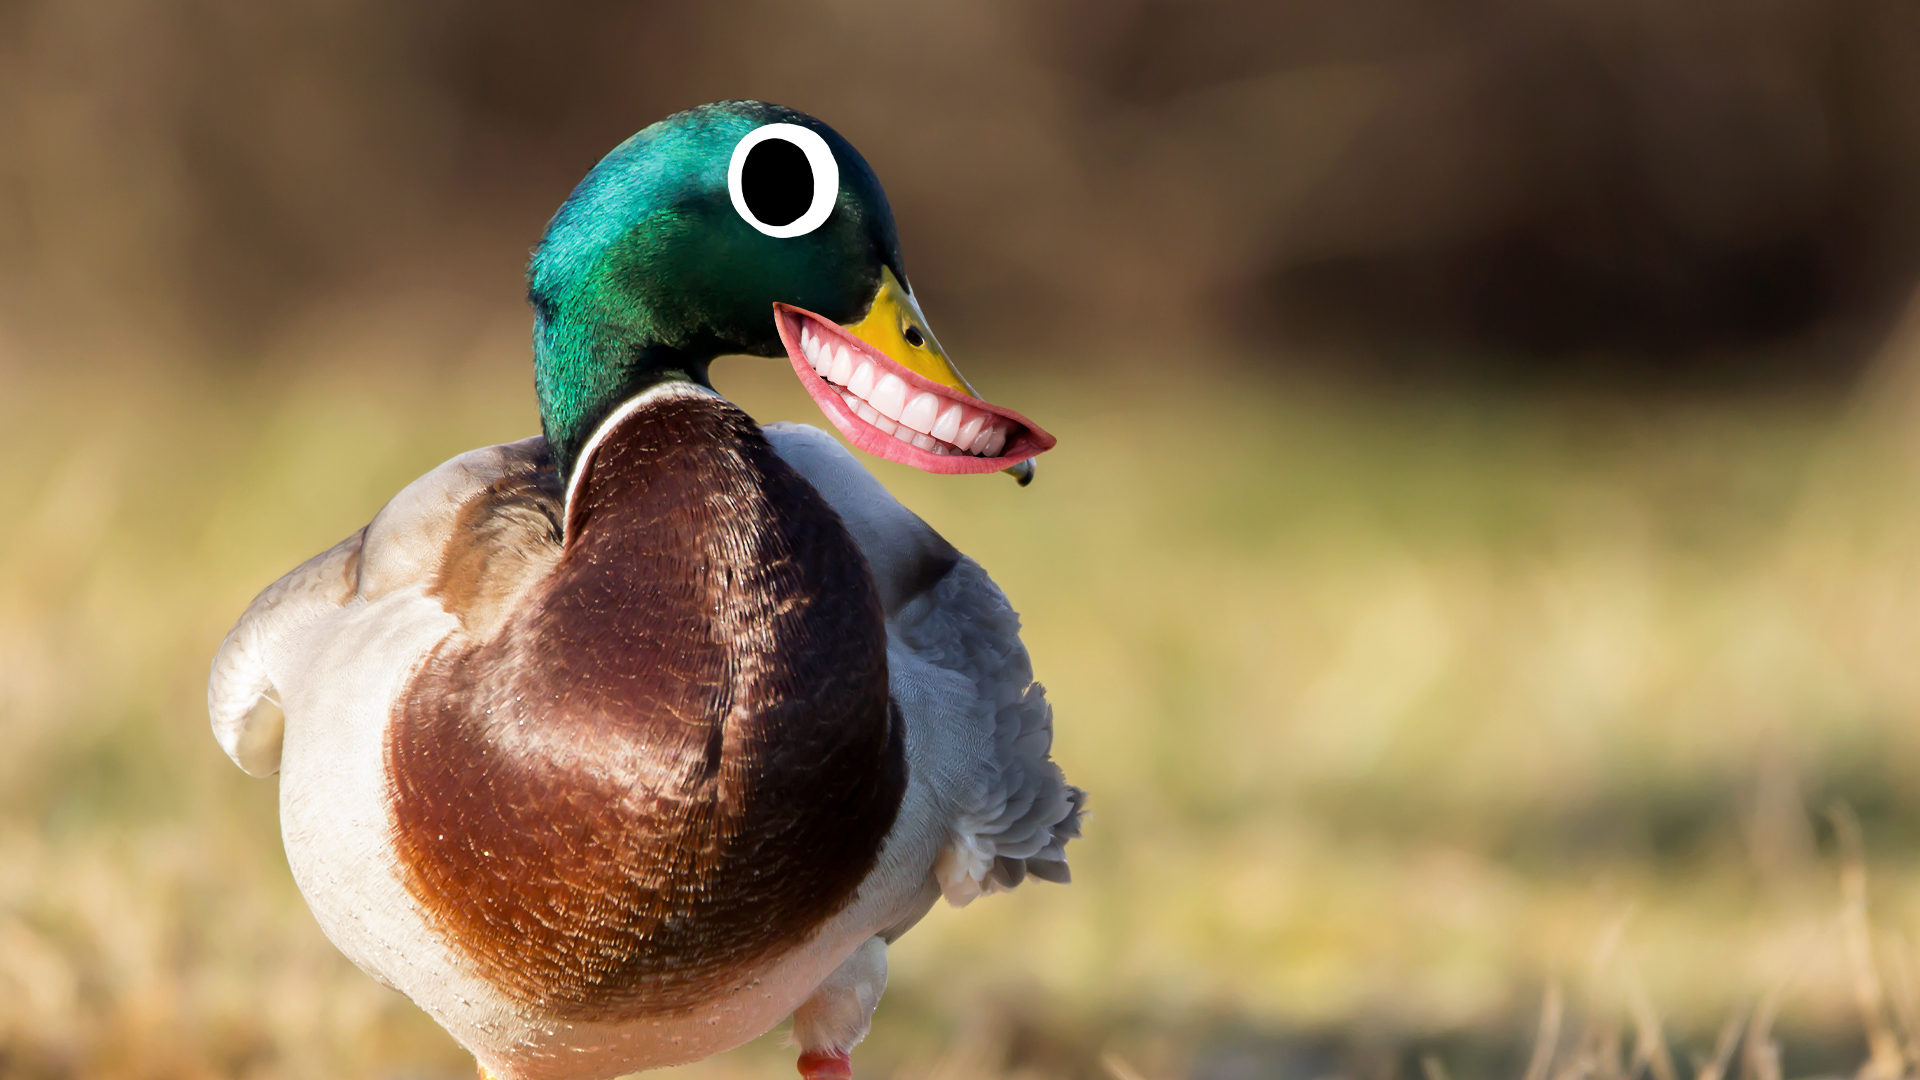 A goofy duck